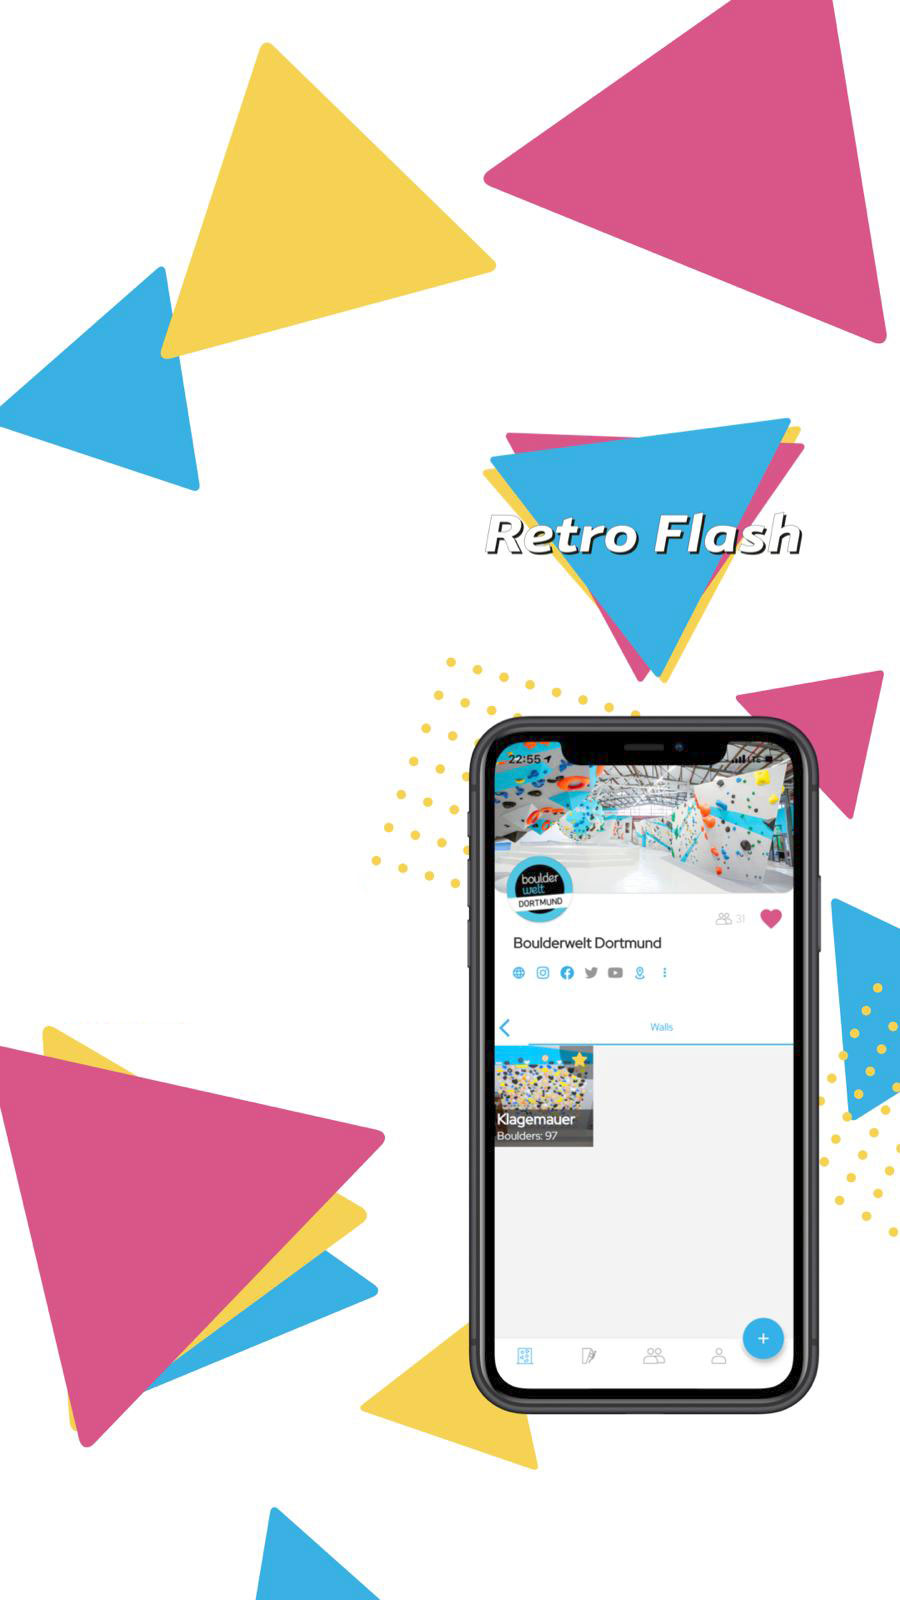 Filtermöglichkeiten - Mehr Spaß an der Definierwand mit der Retro Flash App in der Boulderwelt Dortmund